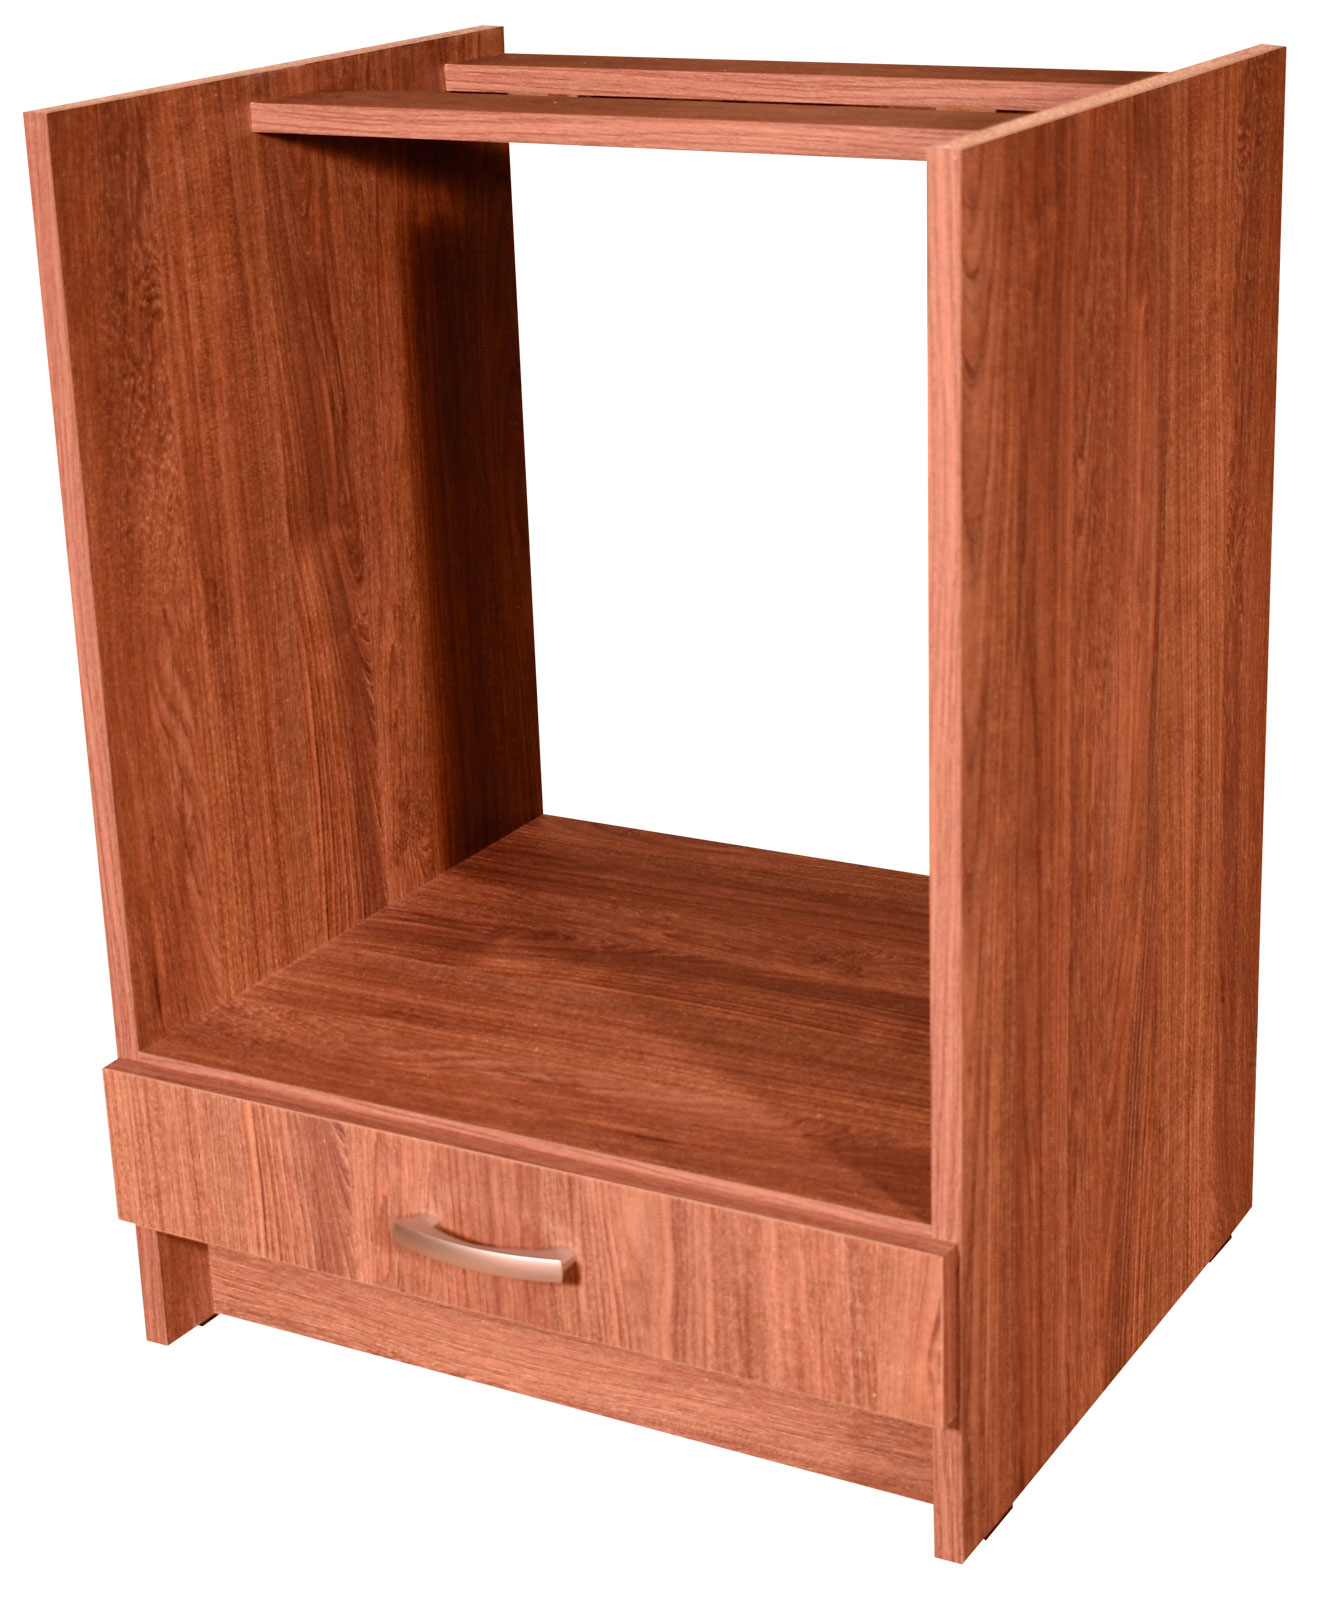 Kuchyňská skříňka pro vestavnou troubu ořech 60 cm